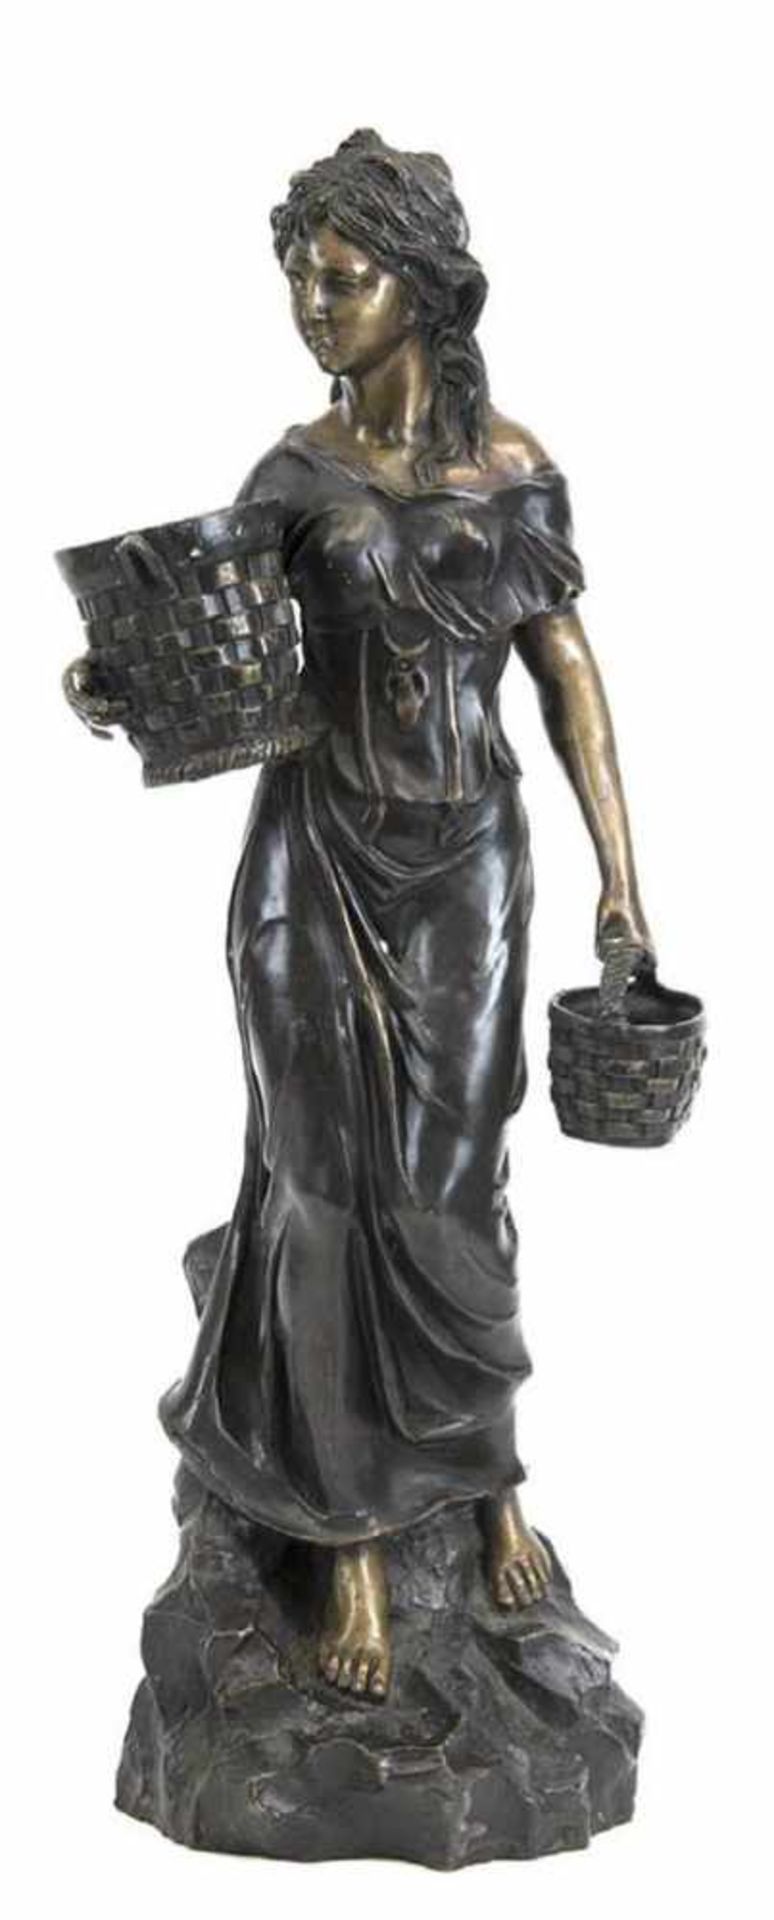 Bronze-Figur "Junge Frau mit Körben", 20. Jh., auf Sockel, H. 68 cm- - -23.80 % buyer's premium on